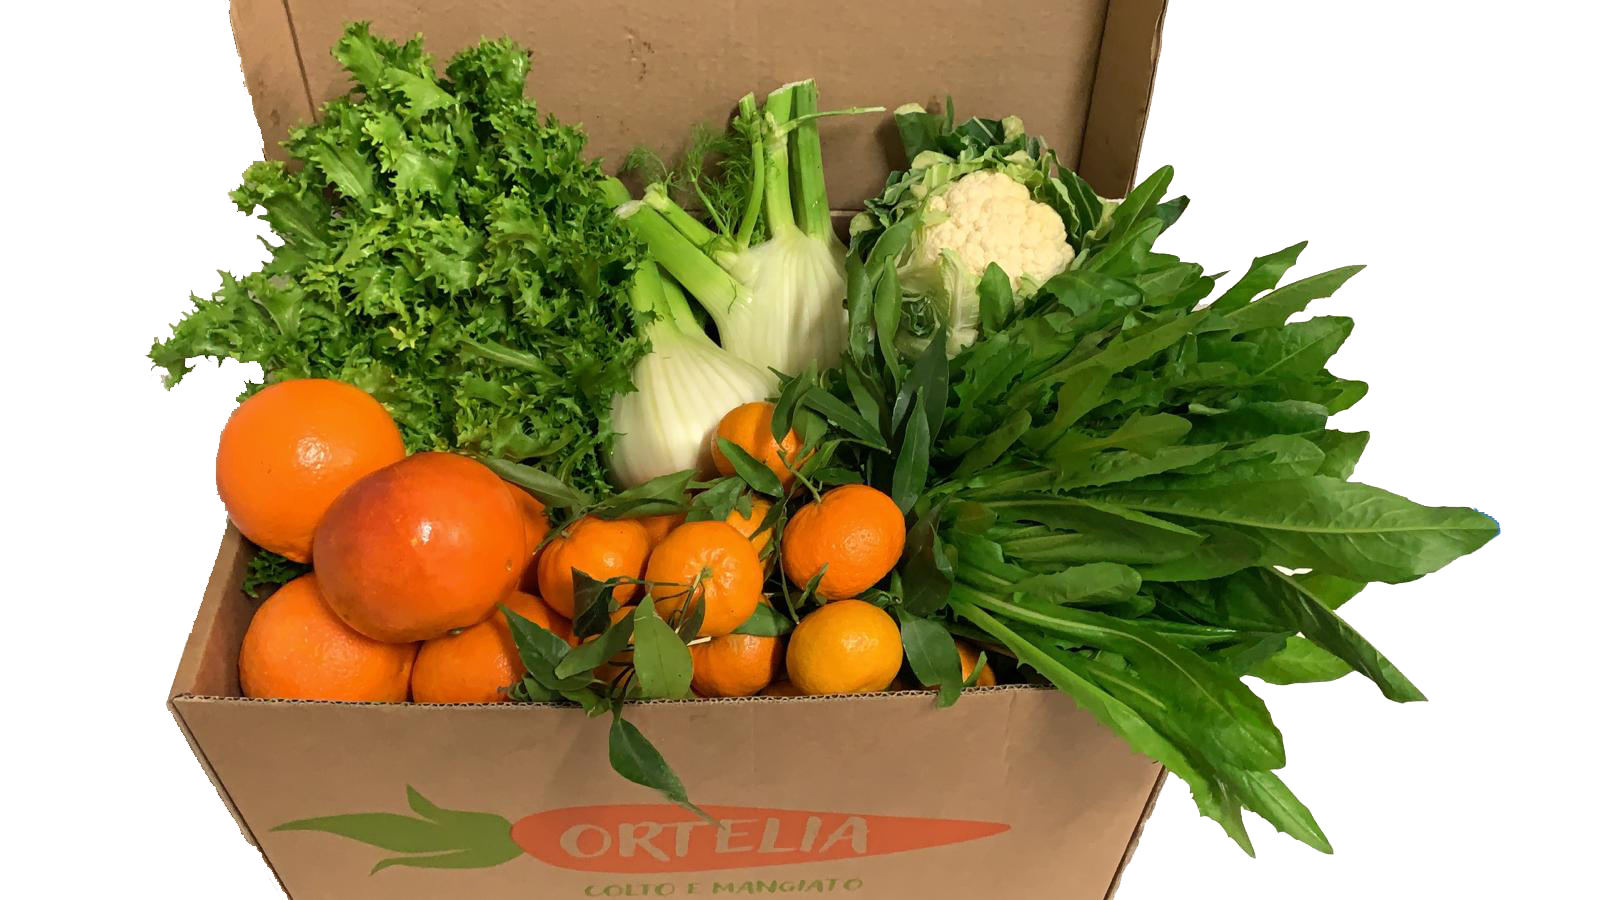 Ortelia Roma | Frutta e Verdura a Domicilio - Box della Settimana 17/23 Febbraio 2020